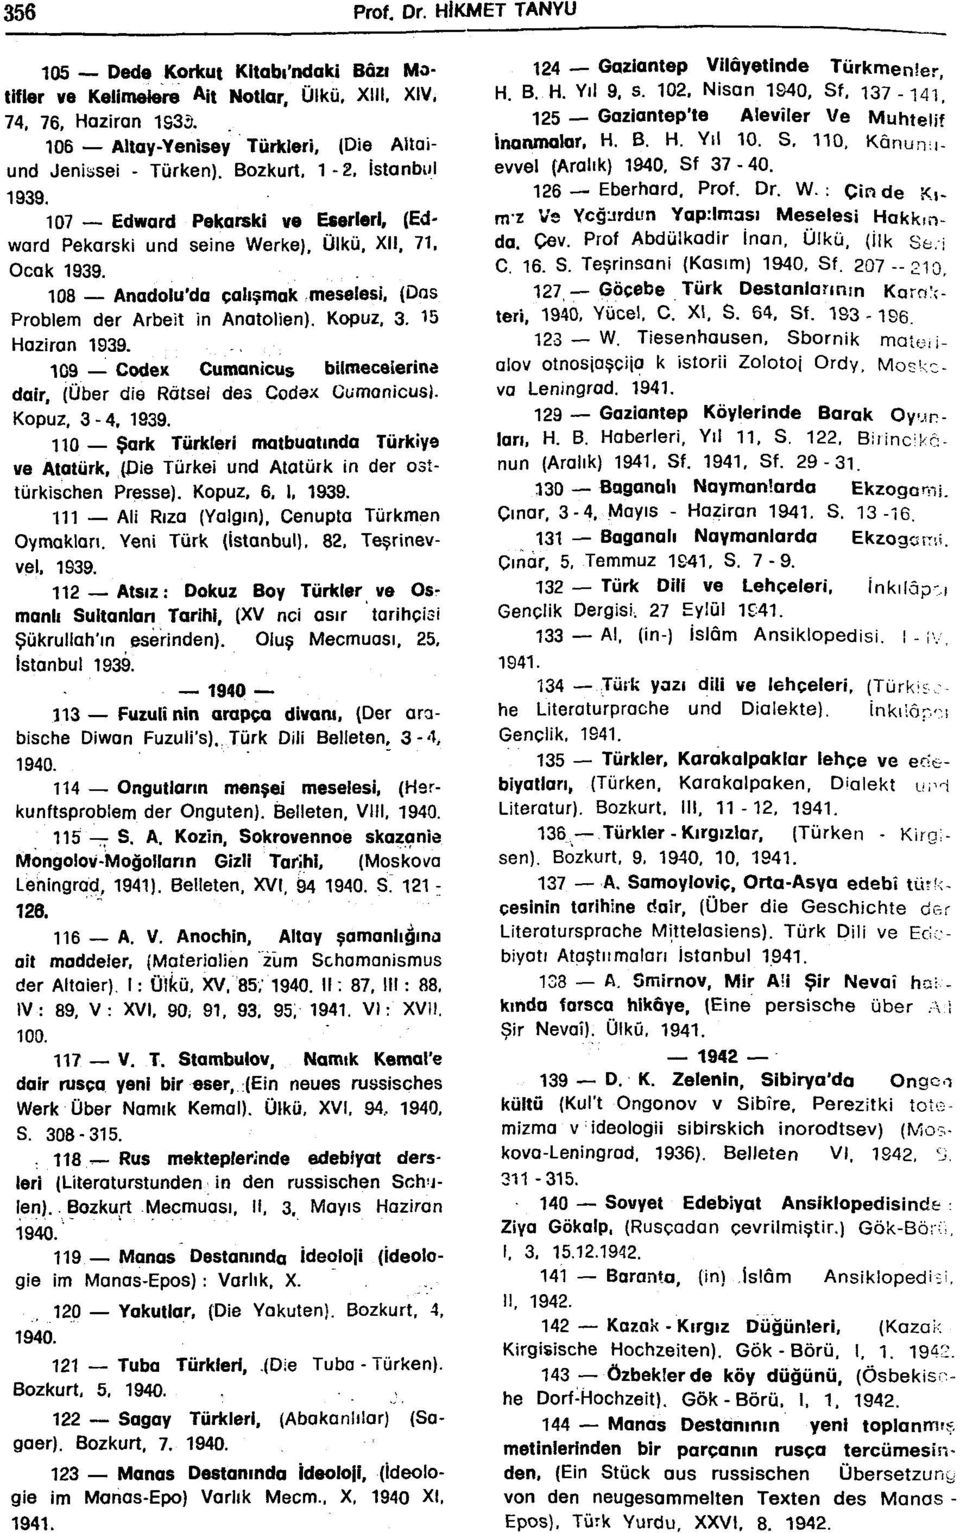 Kopuz, 3. 15 Haziran 1939. 109 Codex Cumanicus bilmecelerine dair, (Über die Rötsel des Codex Cumanicus). Kopuz, 3-4, 1939.